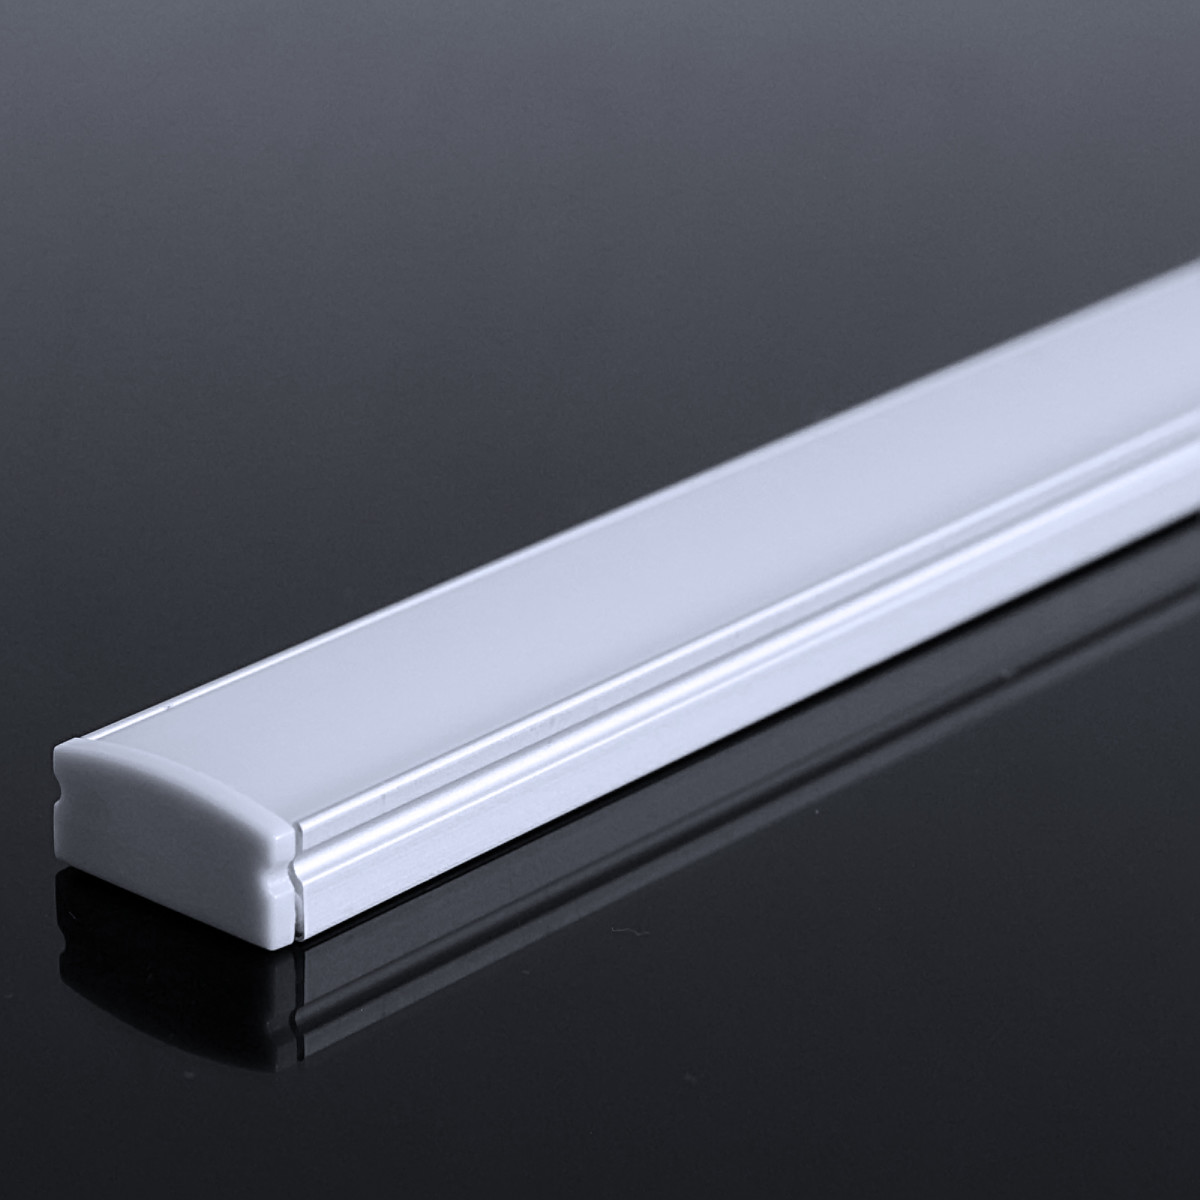 LED Flachprofil "Slim-Line" | Abdeckung diffus | Zuschnitt auf 129cm |